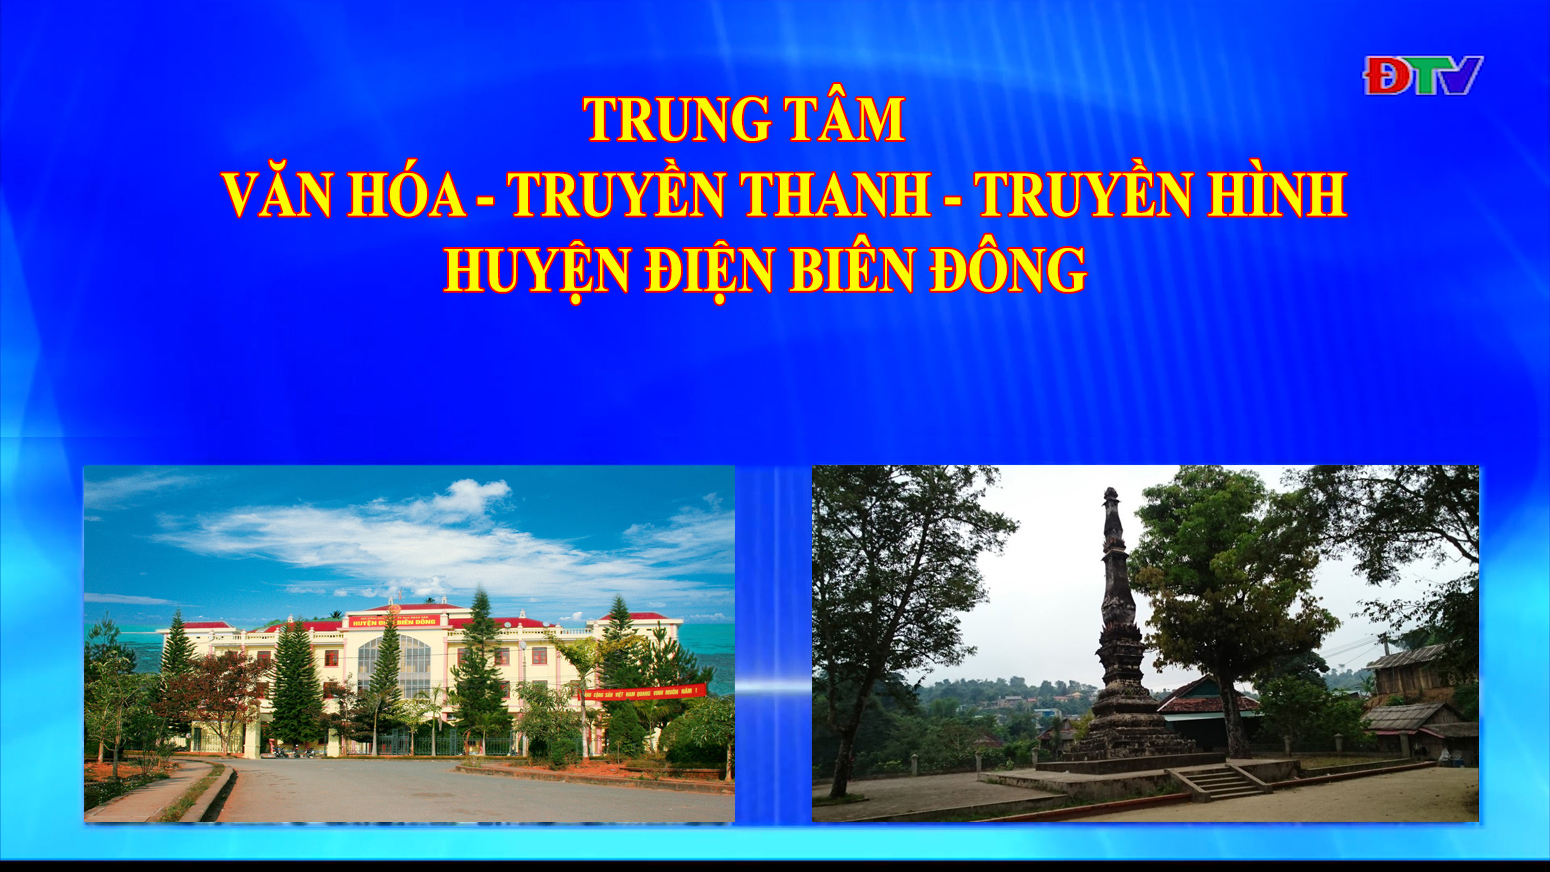 Trung tâm VH-TTTH huyện Điện Biên Đông (Ngày 15-1-2022)